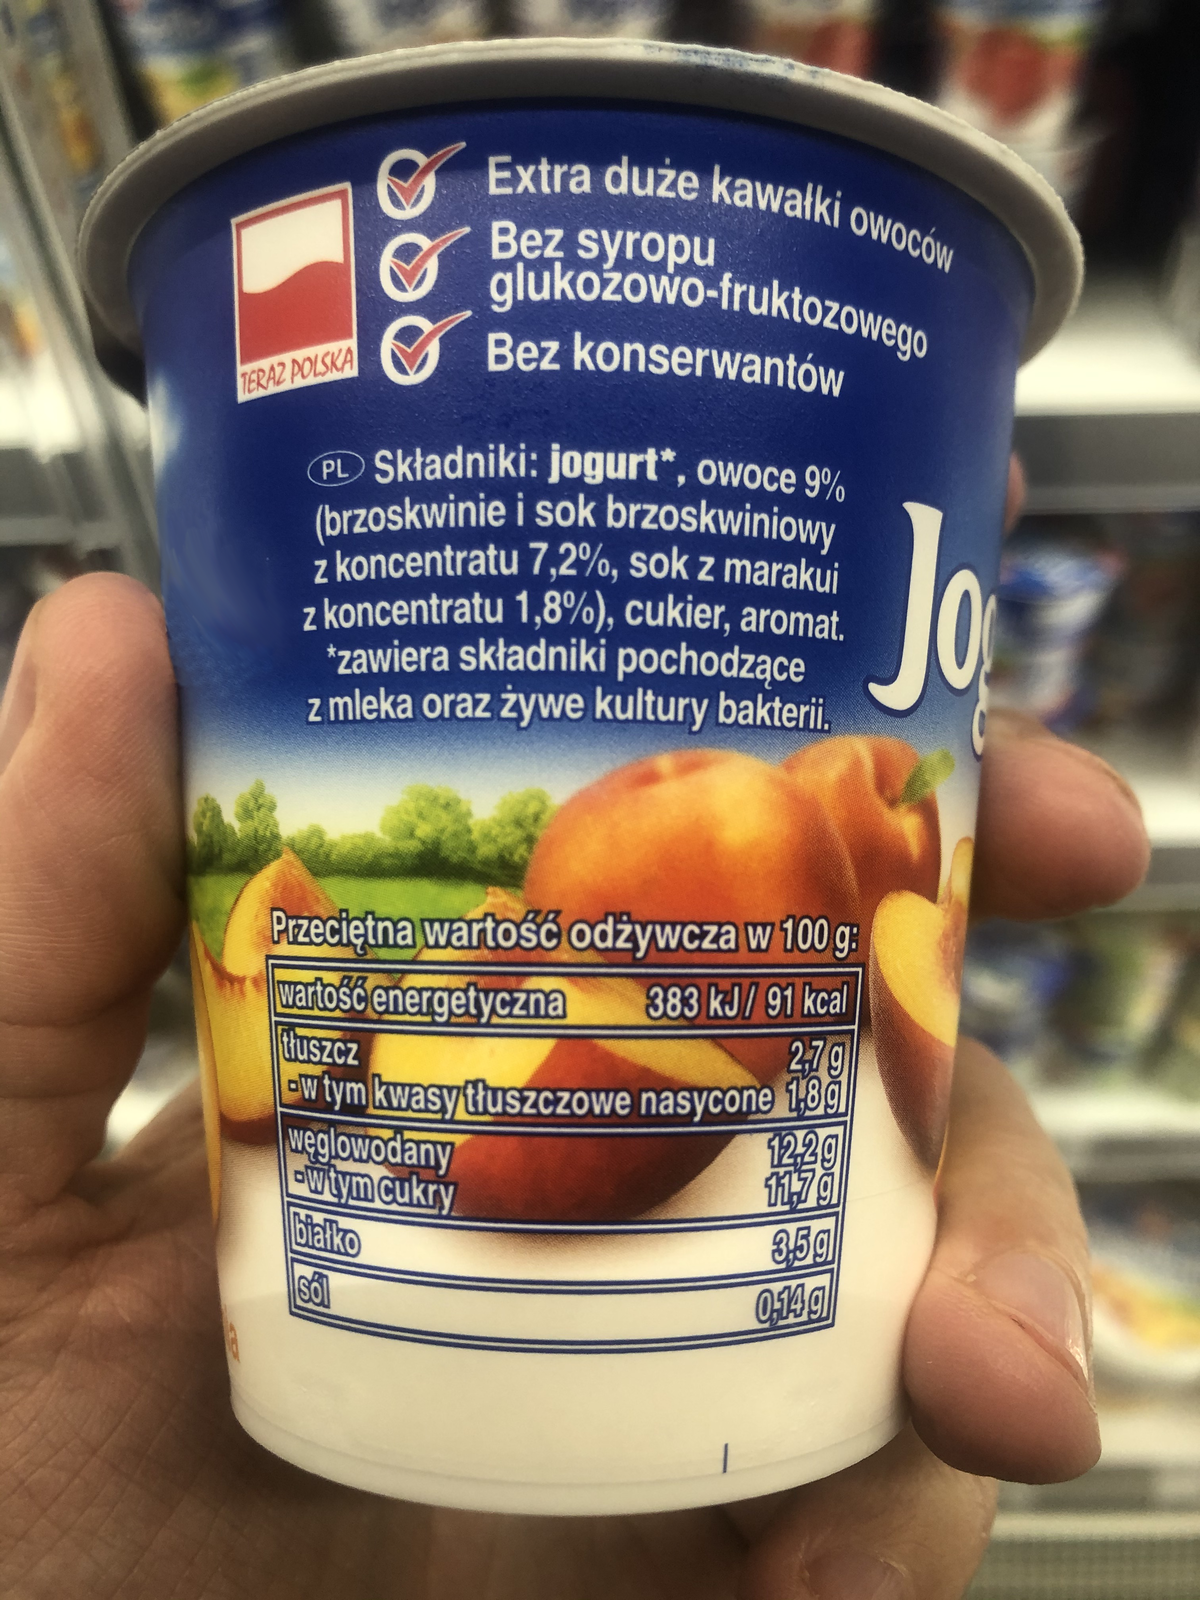 Ilustracja przedstawia etykietę jogurtu. Zawarto na niej następujące informacje: Extra duże kawałki owoców, Bez syropu glukozowo-fruktozowego, Bez konserwantów. Składniki: jogurt*, owoce 9% (brzoskwinie i sok brzoskwiniowy z koncentratu 7,2%, sok z marakui z koncentratu 1,8%), cukier, aromat. * zawiera składniki pochodzące z mleka oraz żywe kultury bakterii. Przeciętna wartość odżywcza w 100g: wartość energetyczna 383kJ/91 kcal; tłuszcz 2,7g (w tym kwasy tłuszczowe nasycone 1,8g); węlowodany 12,2g (w tym cukry 11,7g); białko 3,5g; sól 0,14g.